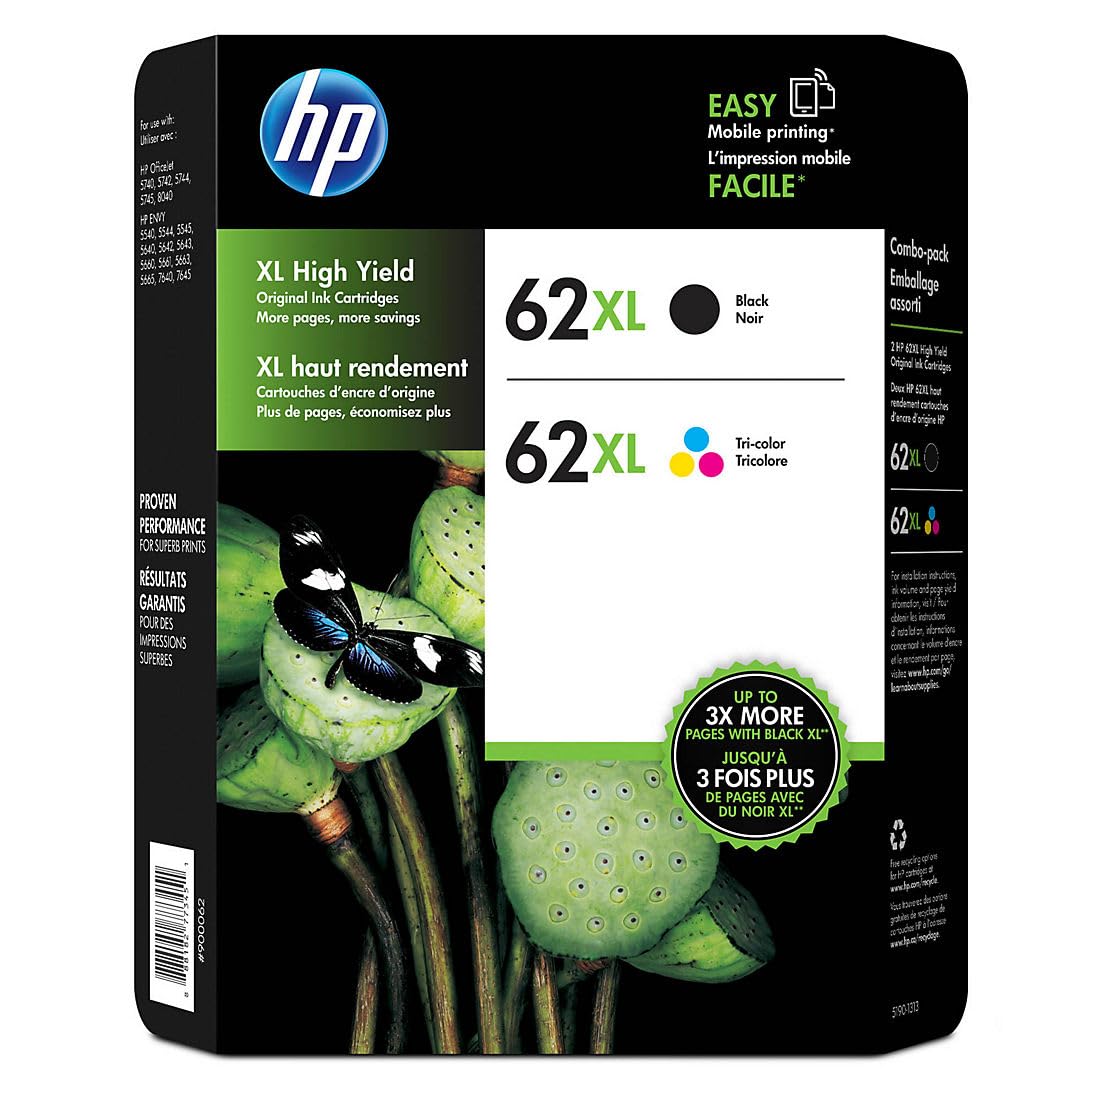 HP 정품 62Xl 대용량 검정 및 대용량 3색 Jetdirect 인쇄 카트리지